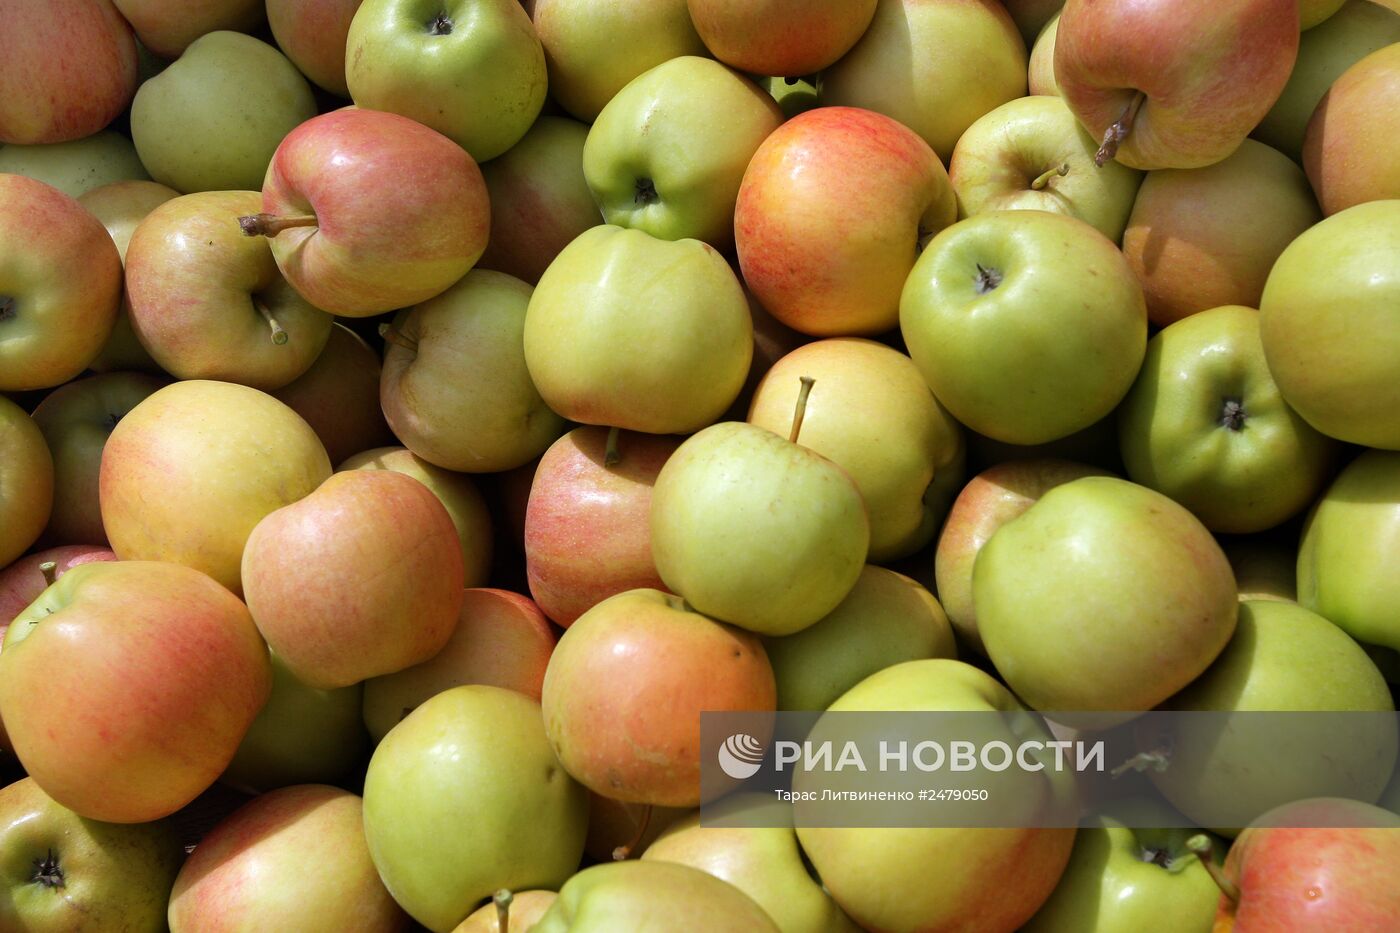 Уборка урожая яблок в Симферополе